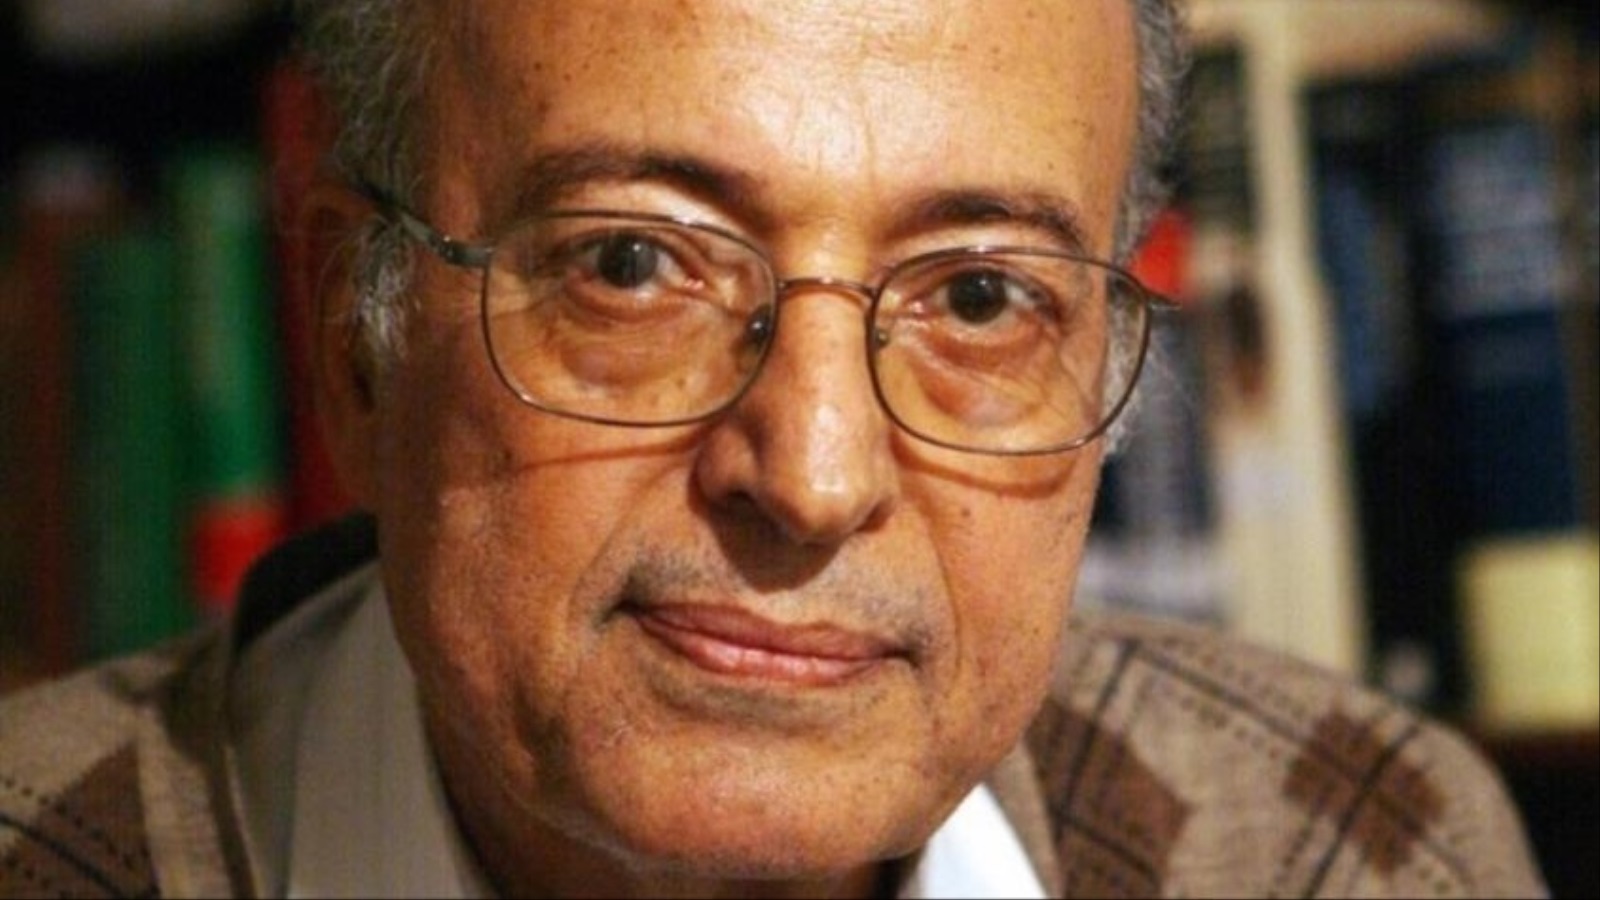 عبدالوهاب المسيري مفكر إسلامي وعالم اجتماع مصري(1938-2008)